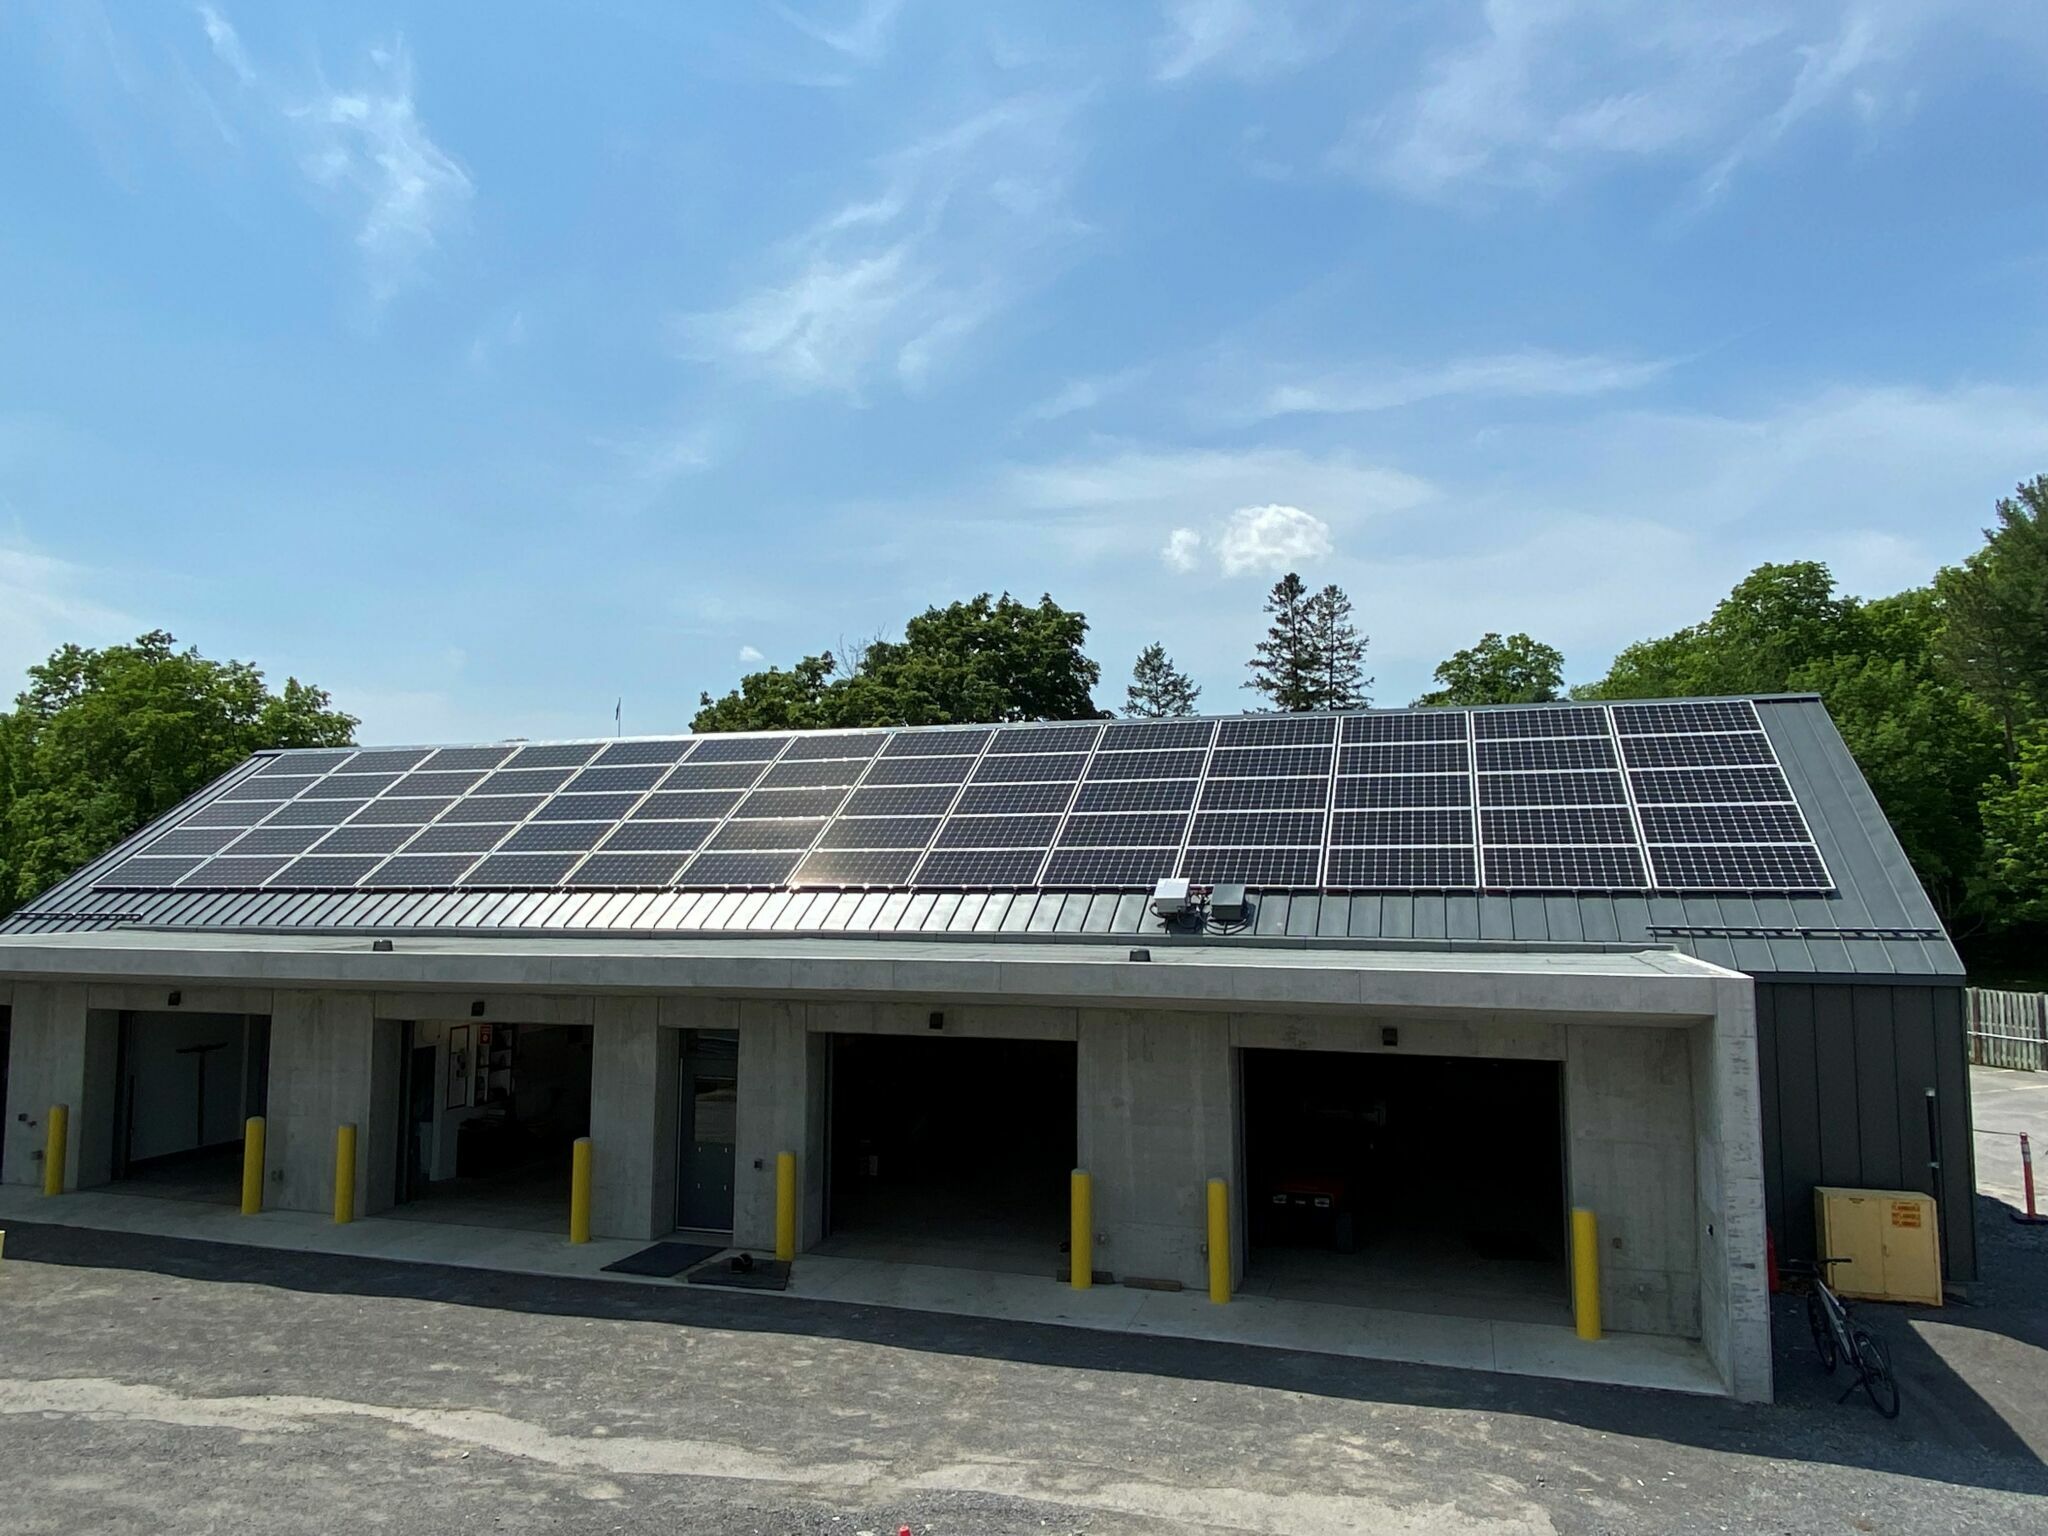 Bâtiment carboneutre doté de panneaux solaires sur le toit.